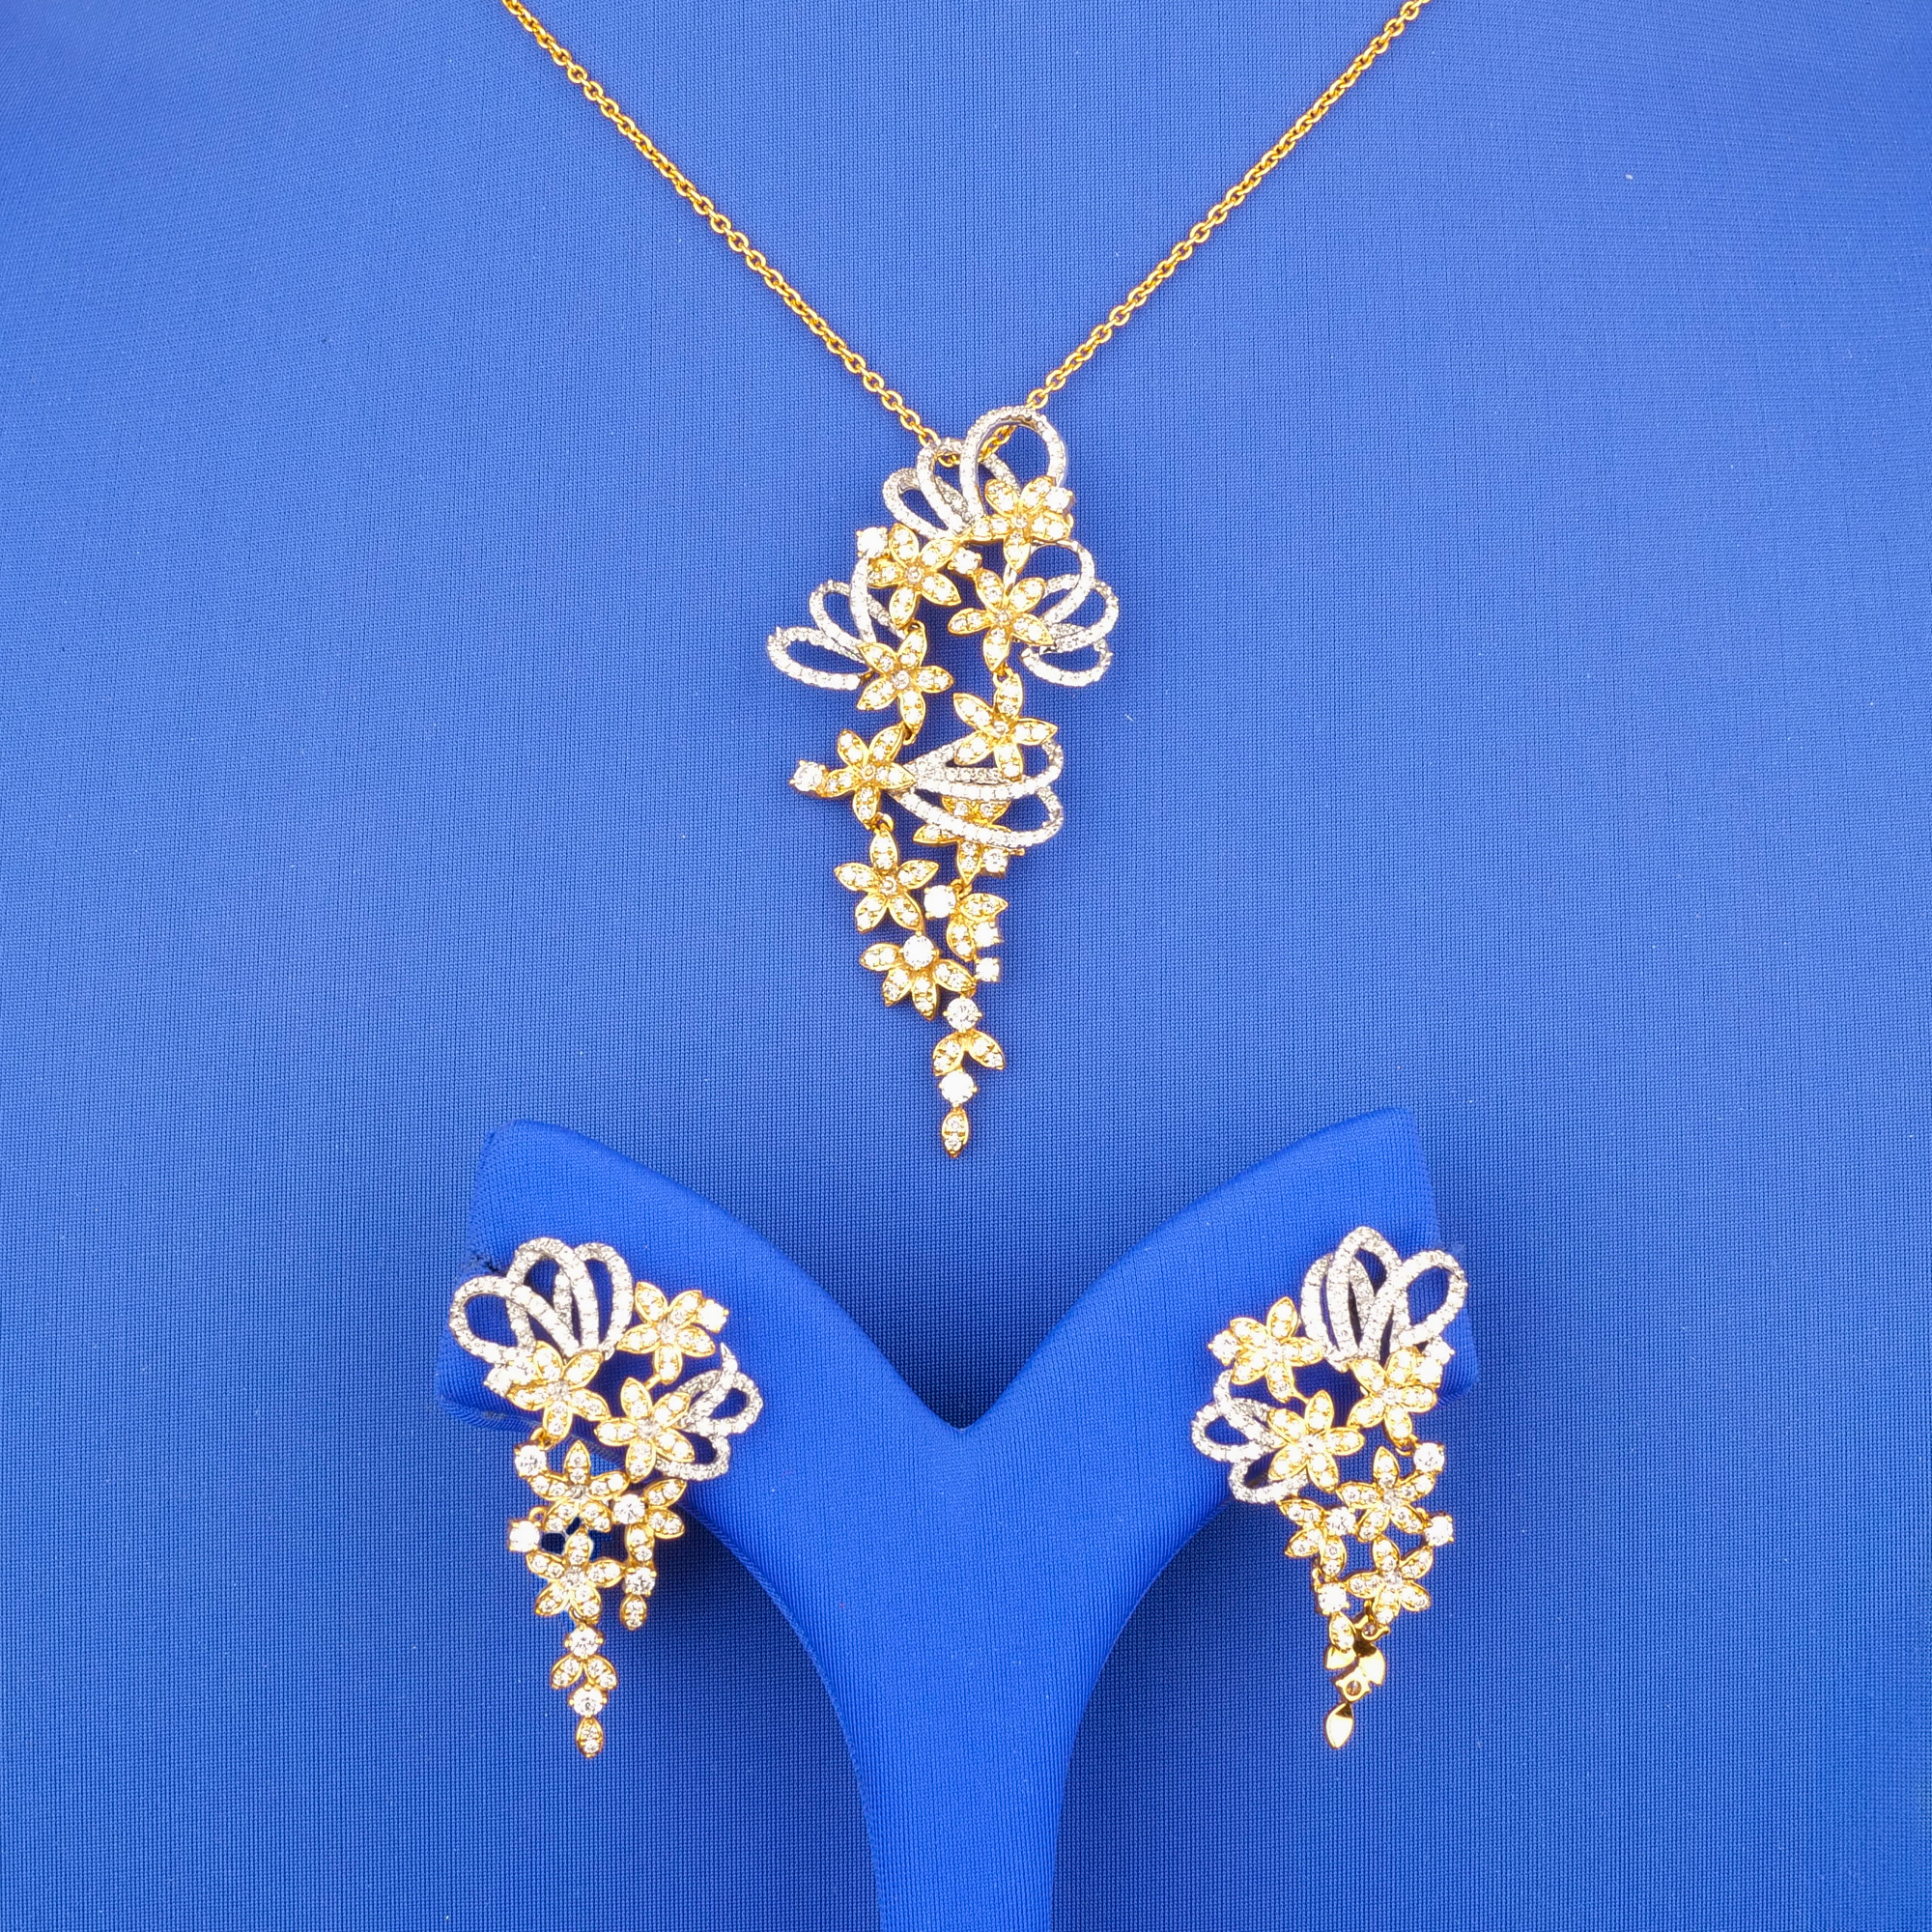 Handmade 18K Gold, Diamond Pendant & Earrings Set (chain not included)